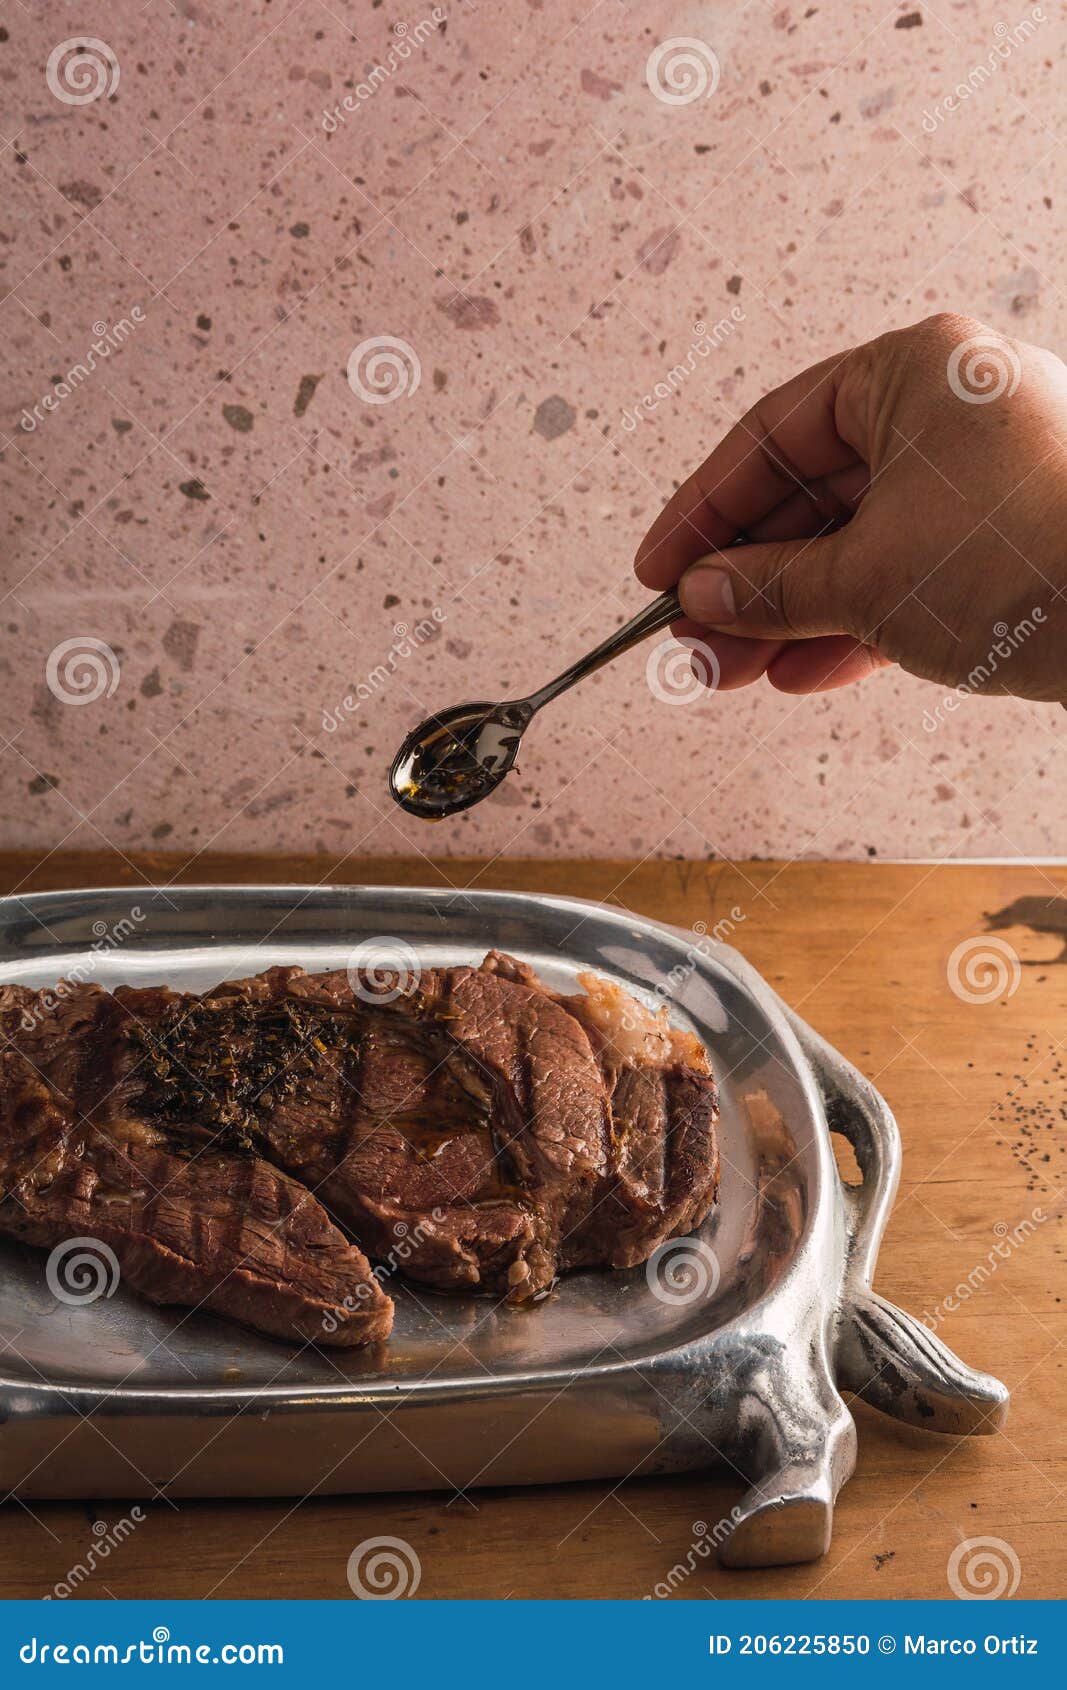 cut of meat `aguja norteÃÂ±a sonora`, served on a silver plate in the  of a cow 14